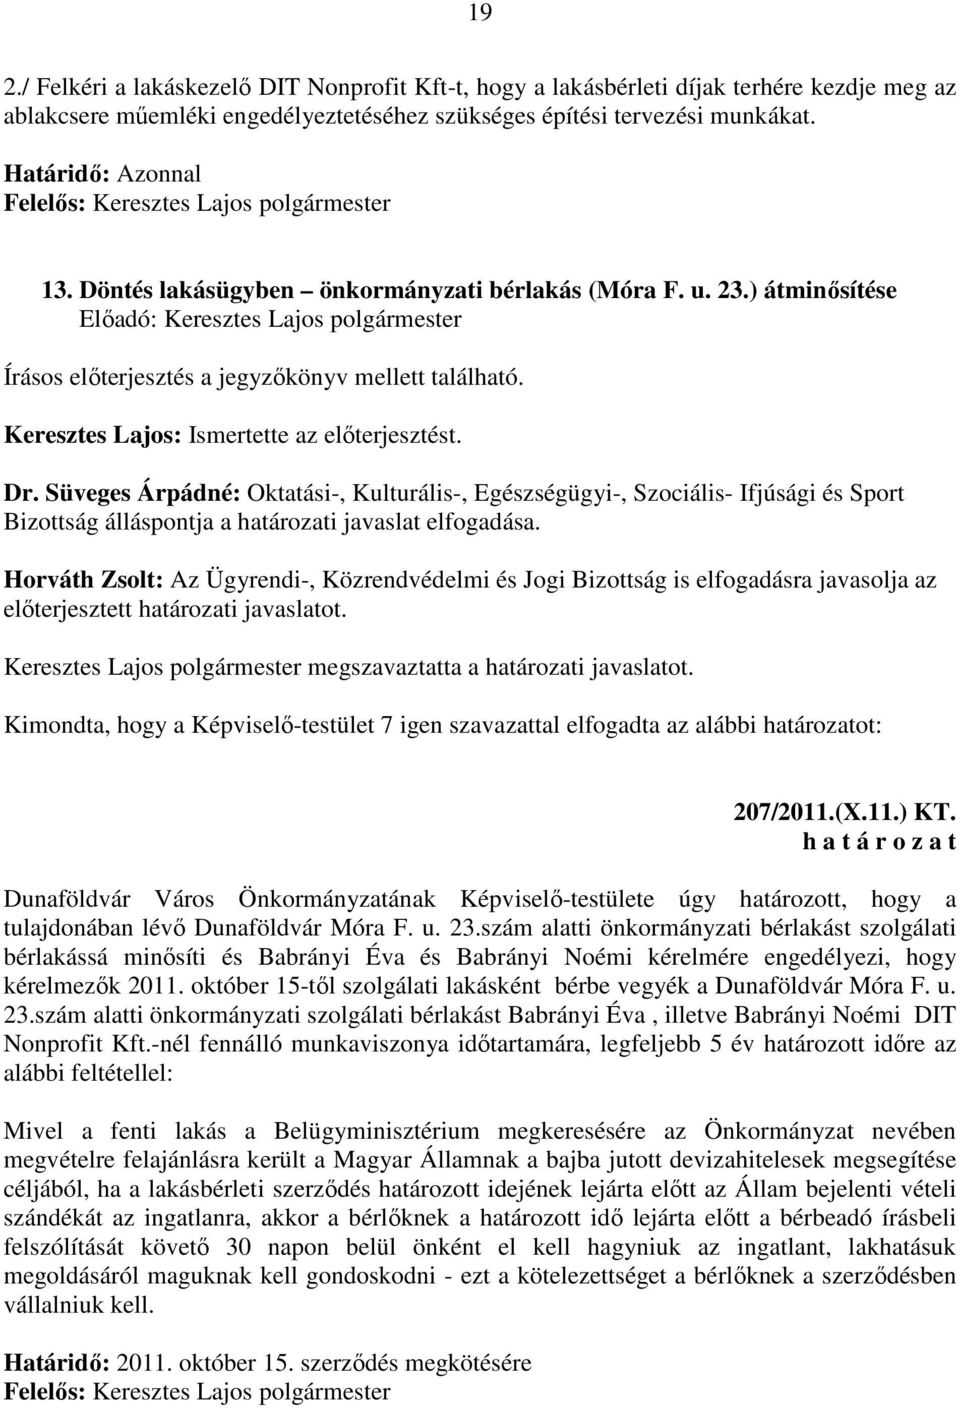 Süveges Árpádné: Oktatási-, Kulturális-, Egészségügyi-, Szociális- Ifjúsági és Sport Bizottság álláspontja a határozati javaslat elfogadása.